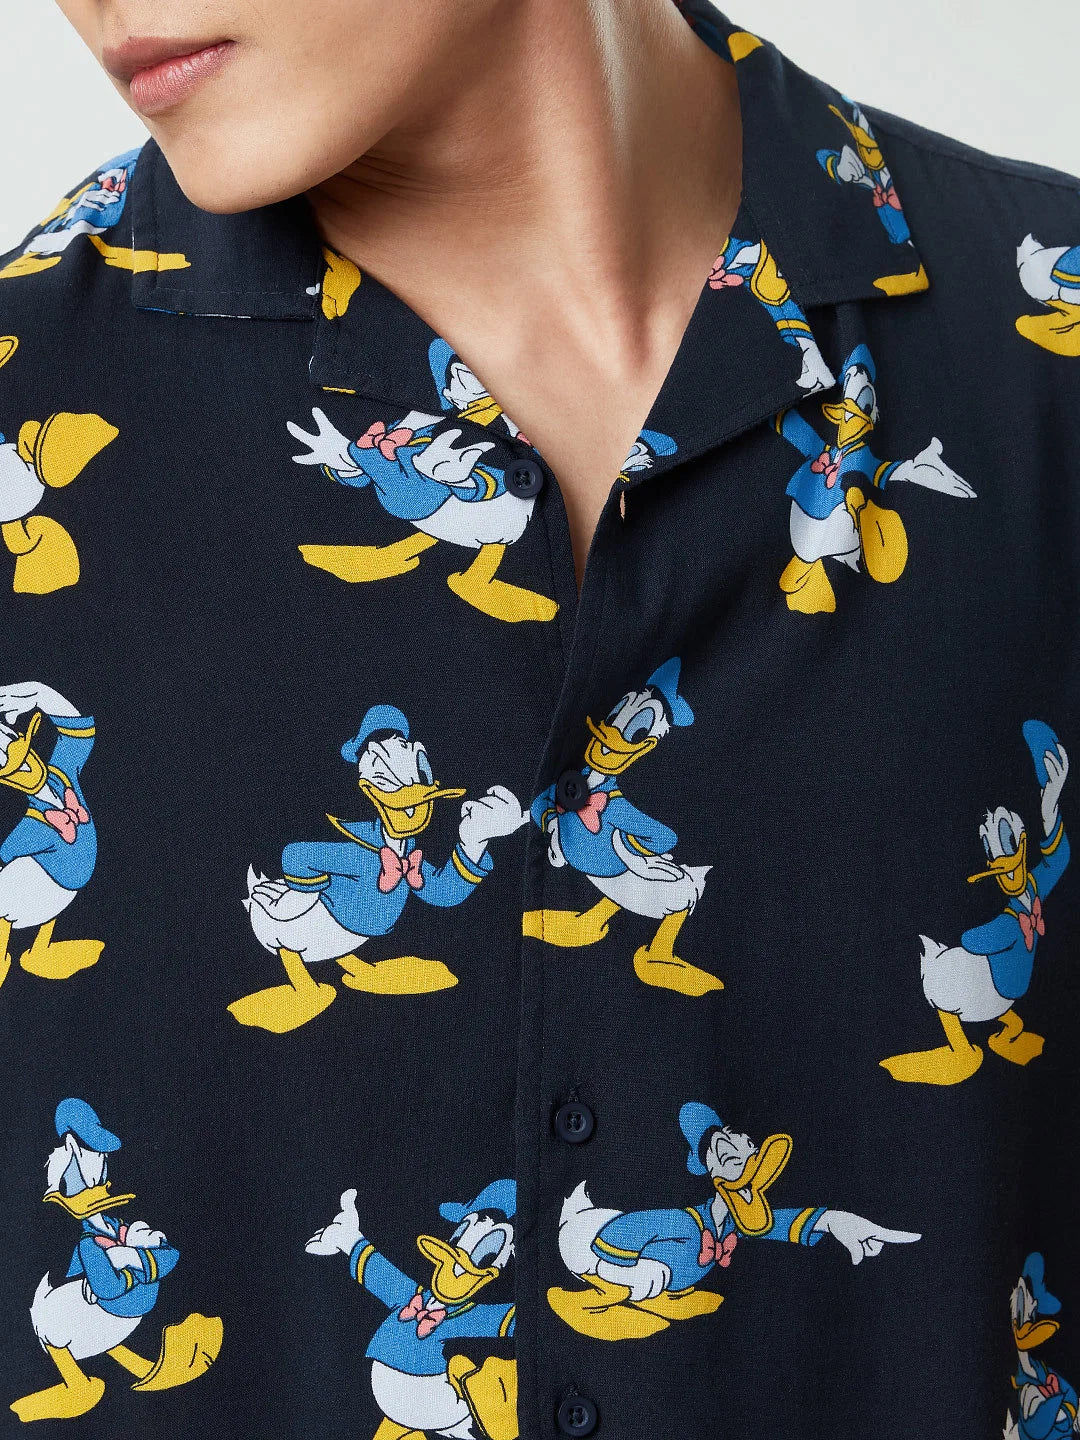 Motif Donald Duck (version britannique)